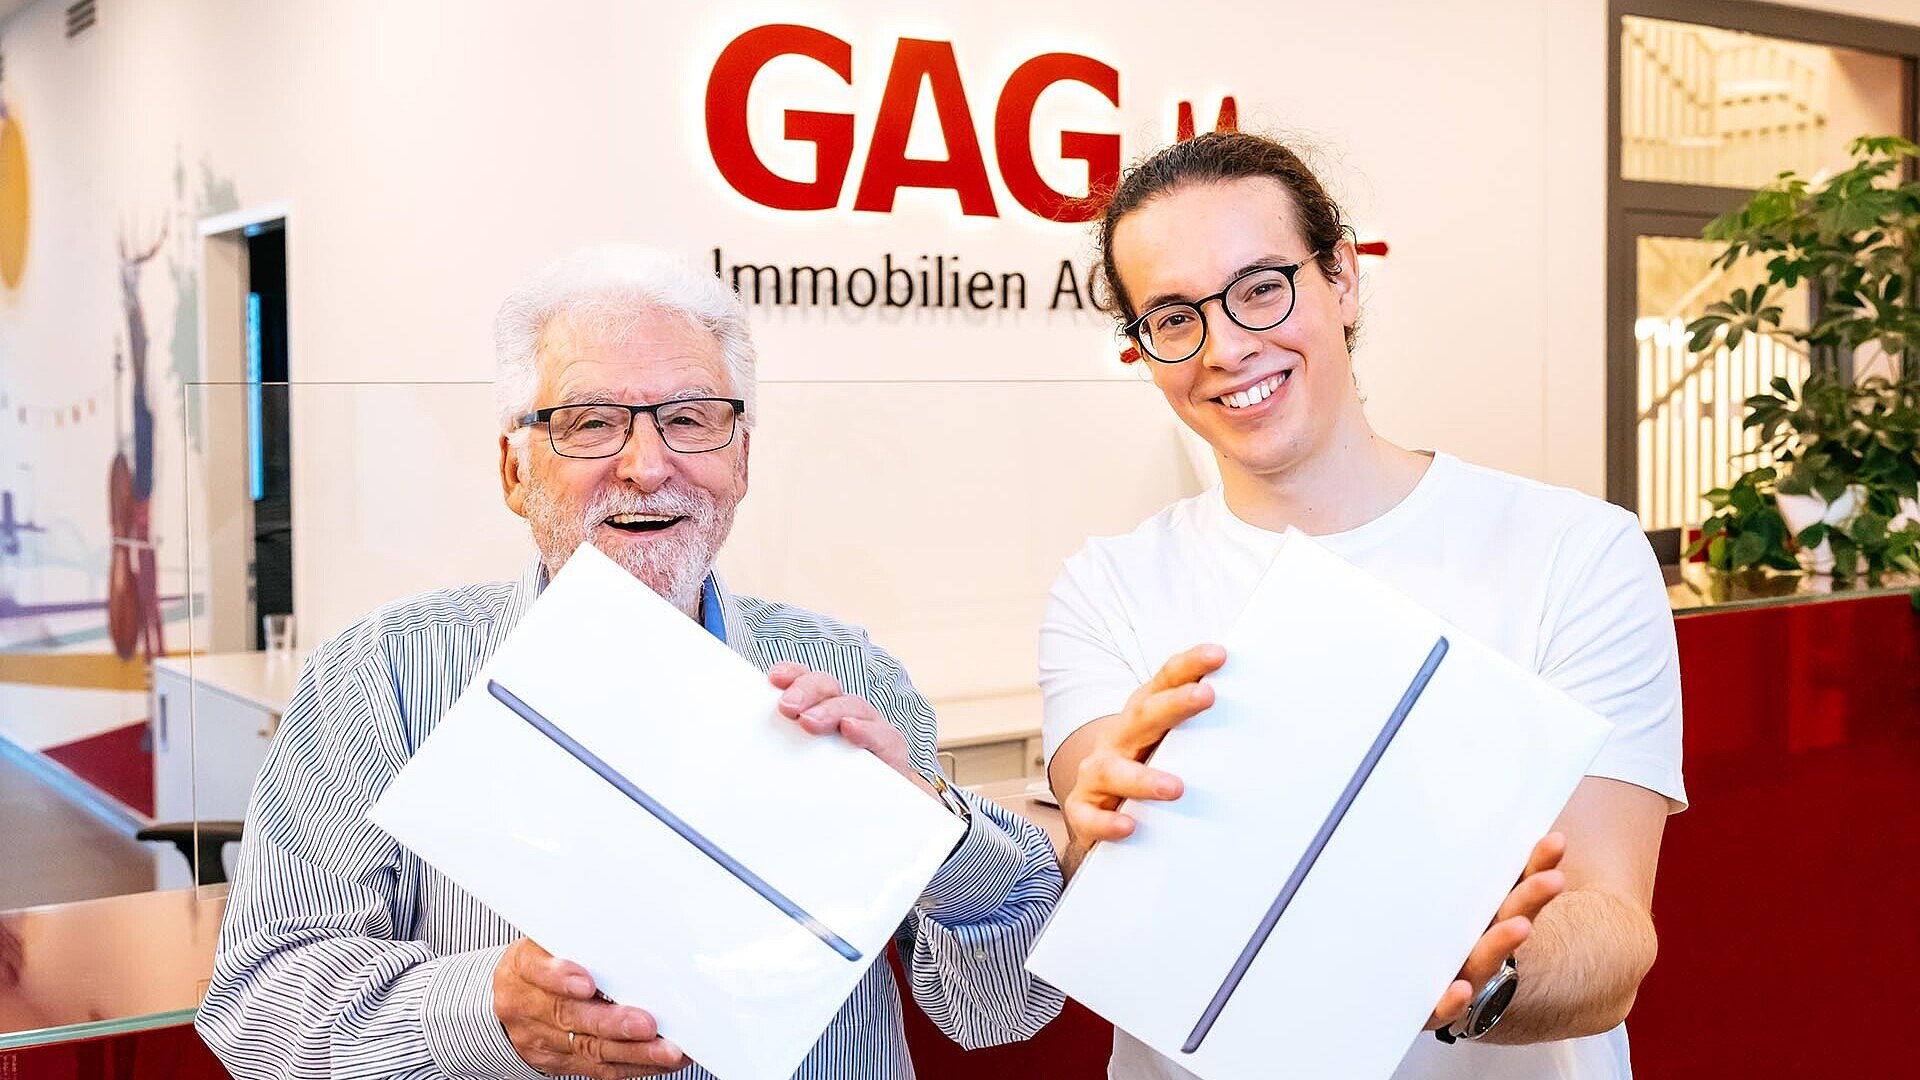 Die glücklichen Gewinner mit den iPads